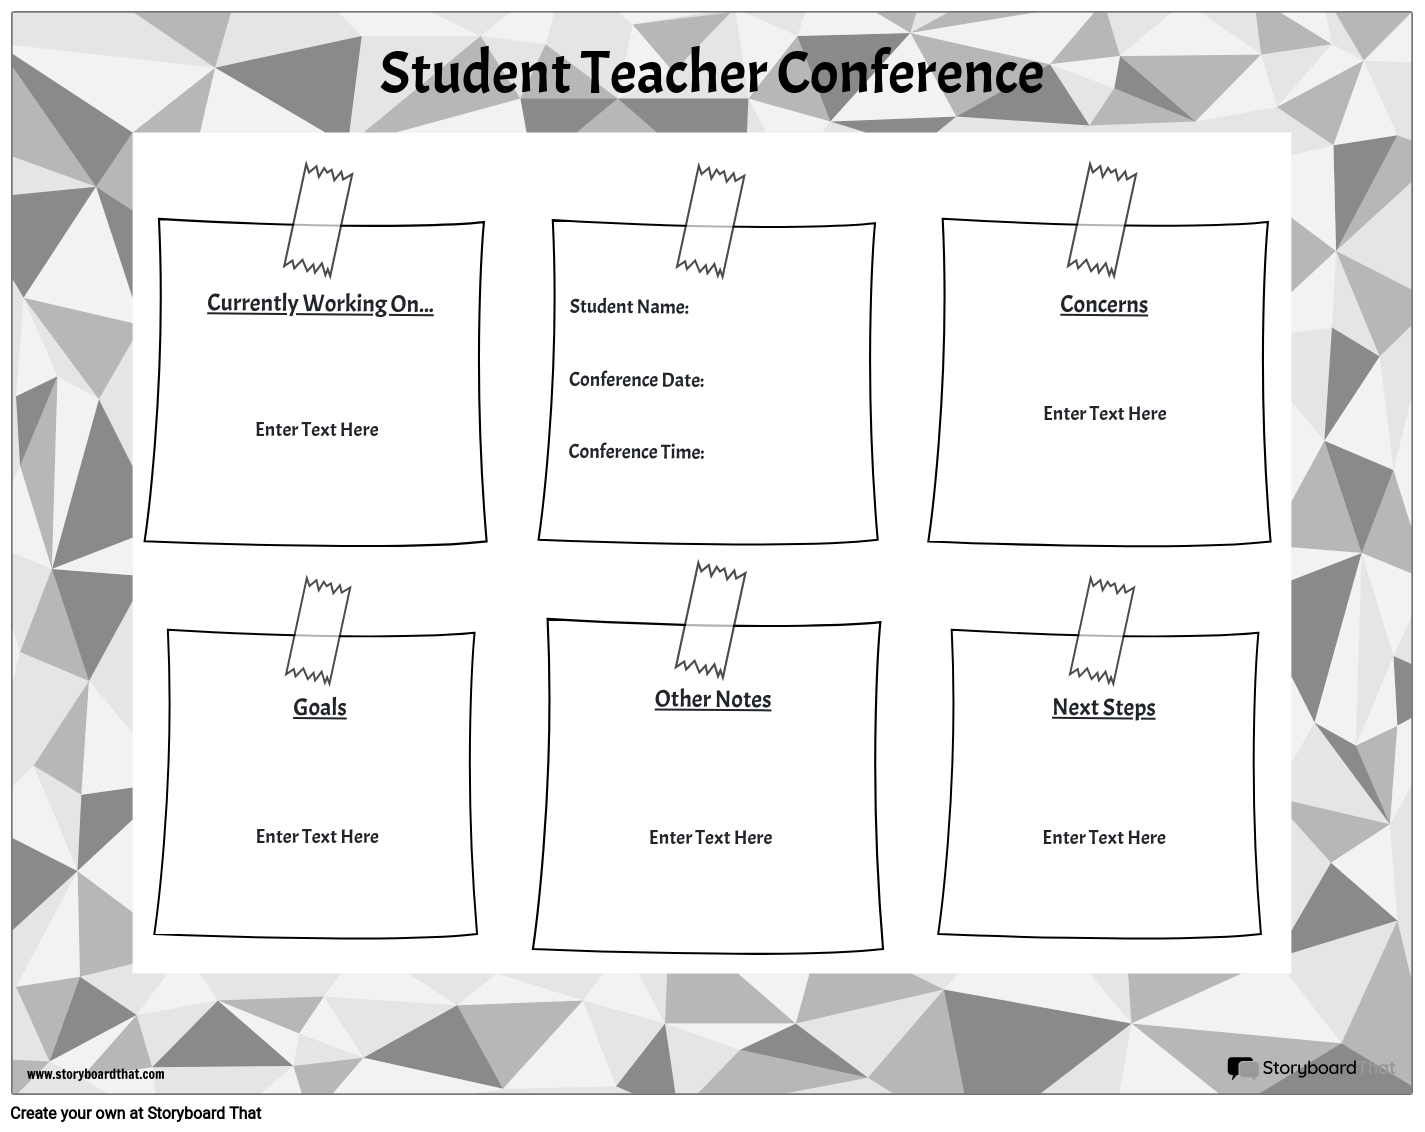 Conferința Profesorilor Studenți 6